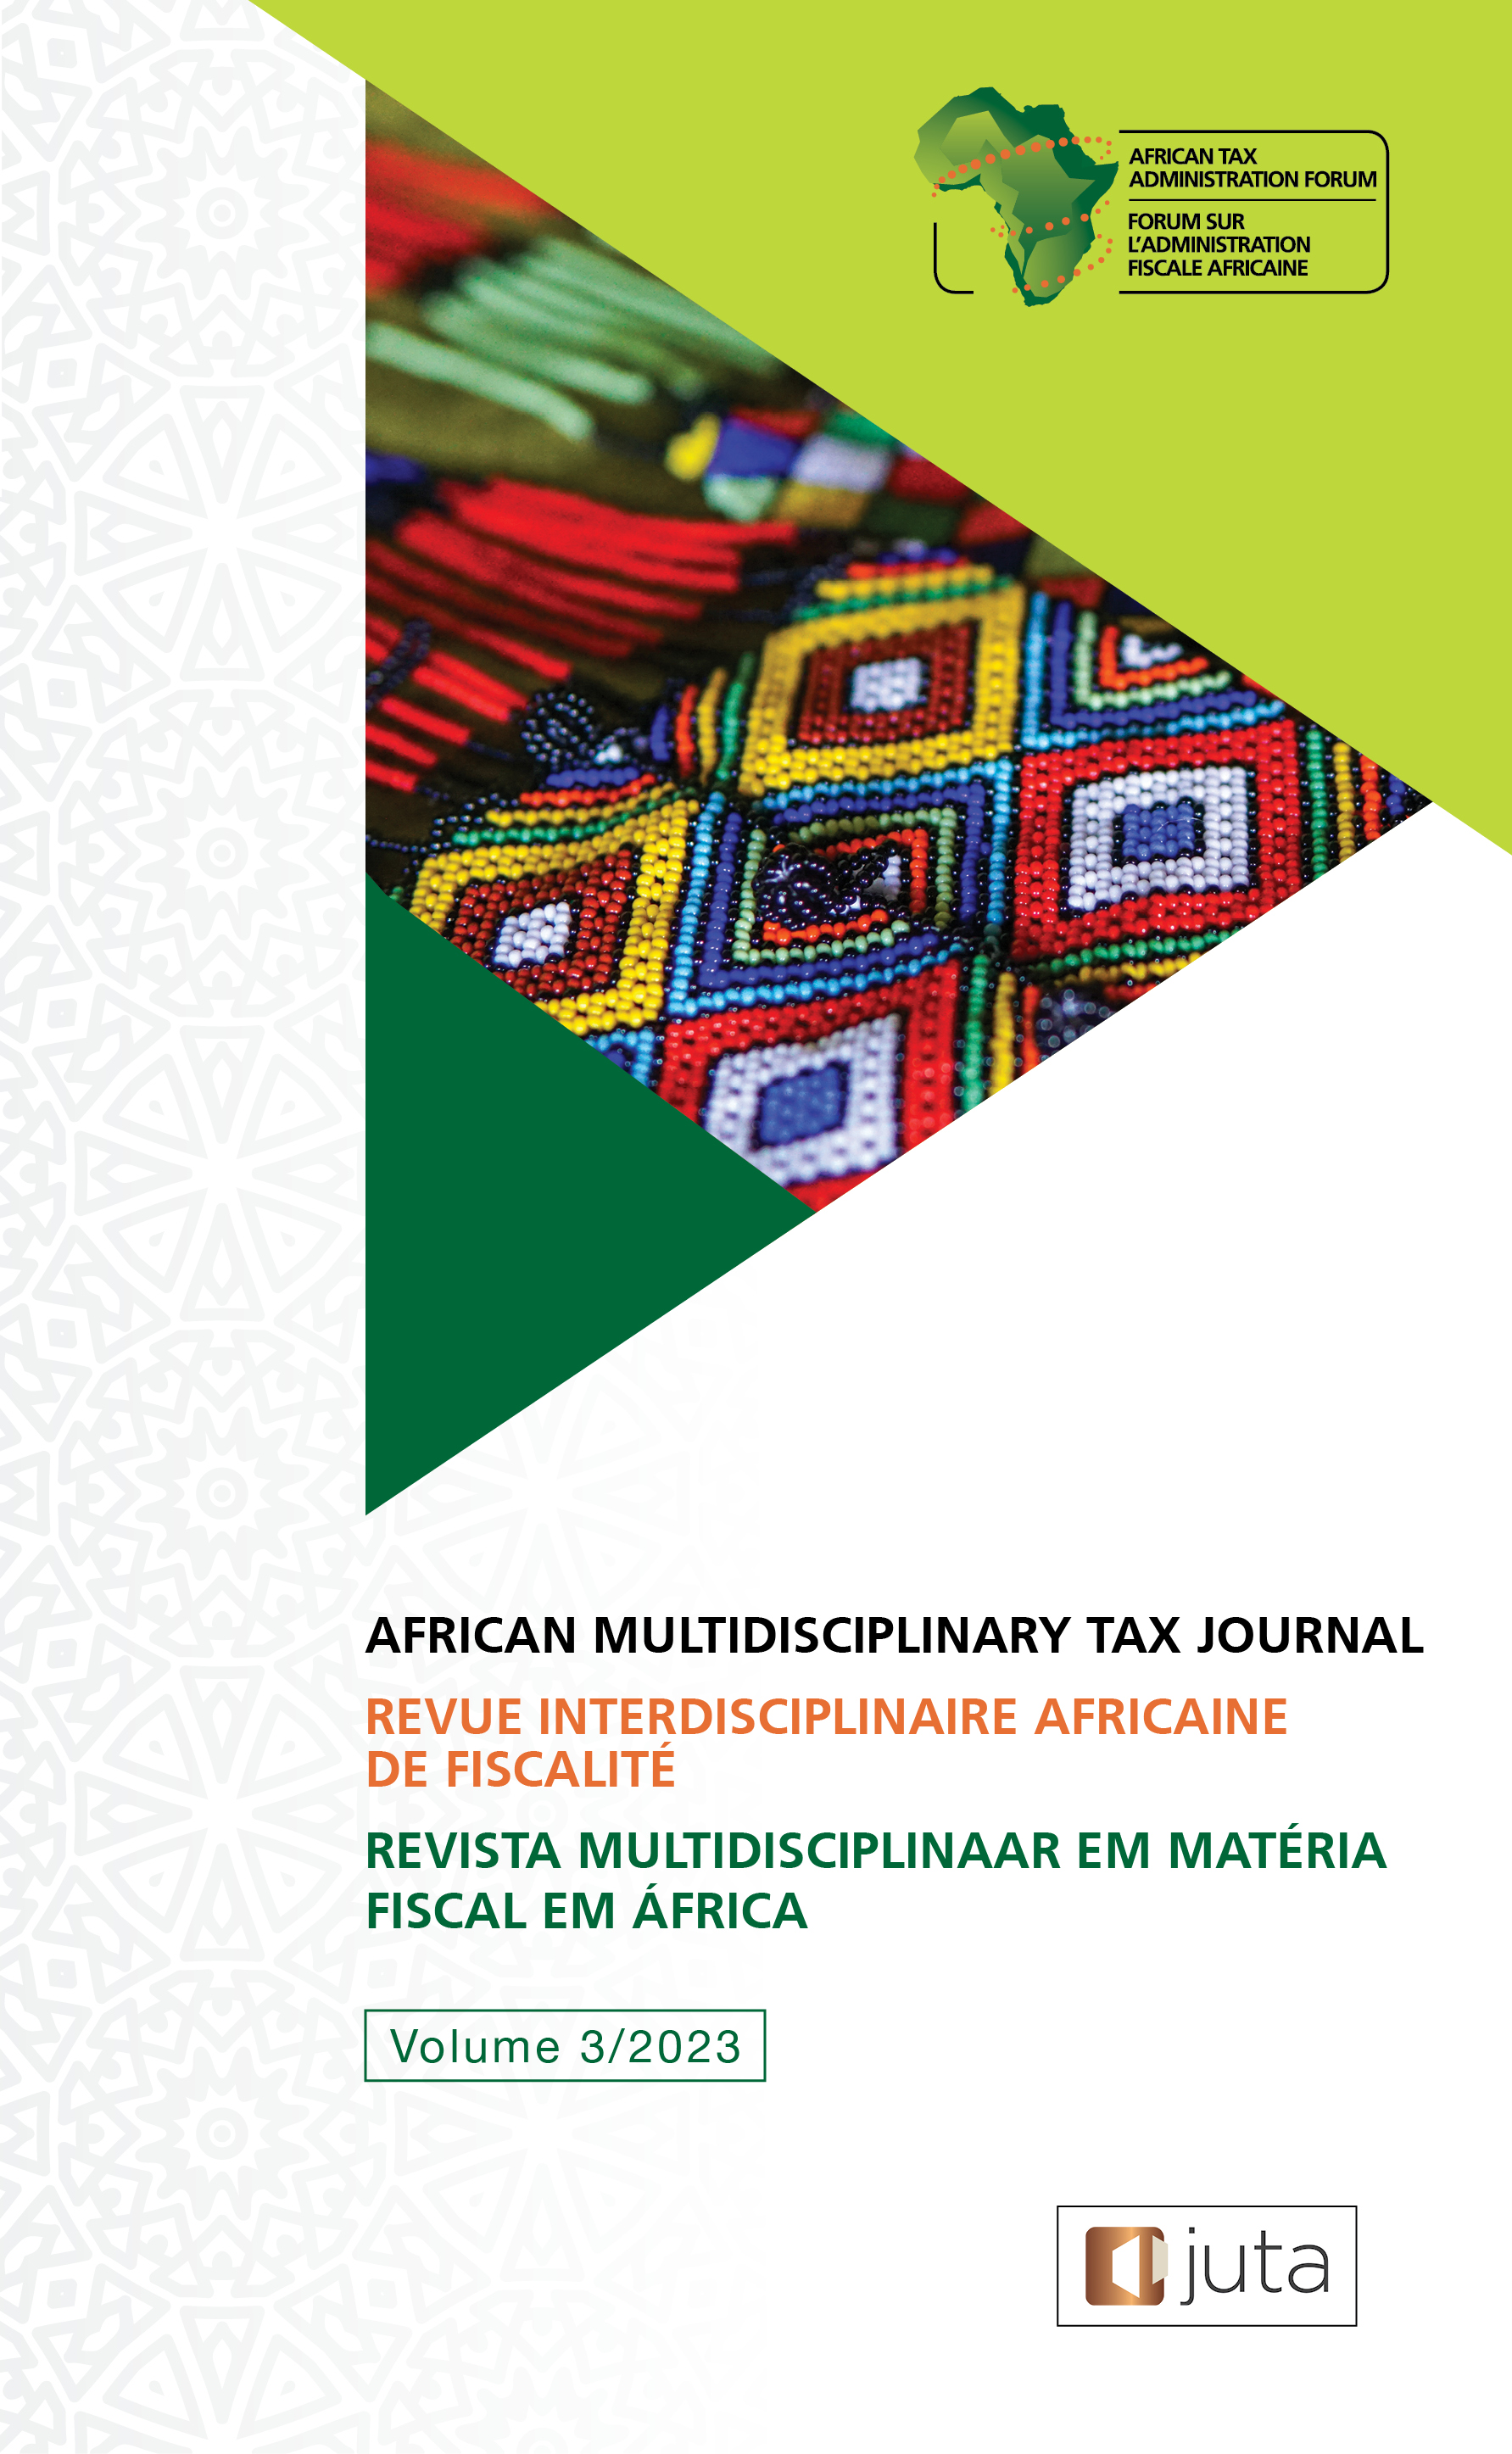 African Multidisciplinary Tax Journal Volume 3/2023